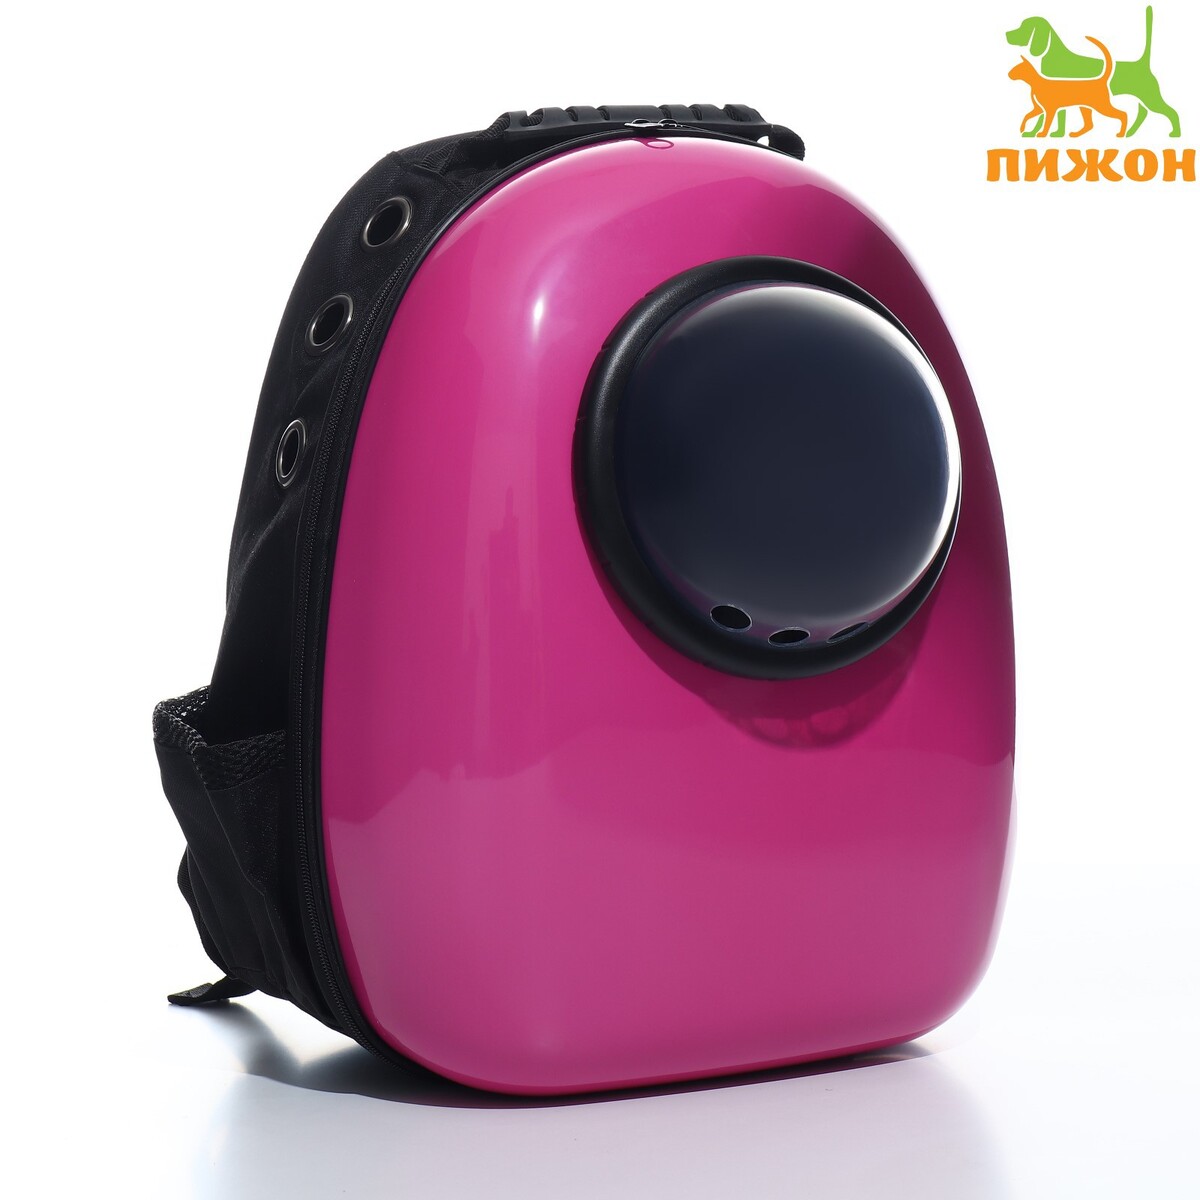 Рюкзак для переноски животных с окном для обзора, 32 х 25 х 42 см, фиолетовый рюкзак для переноски животных с окном для обзора розовый